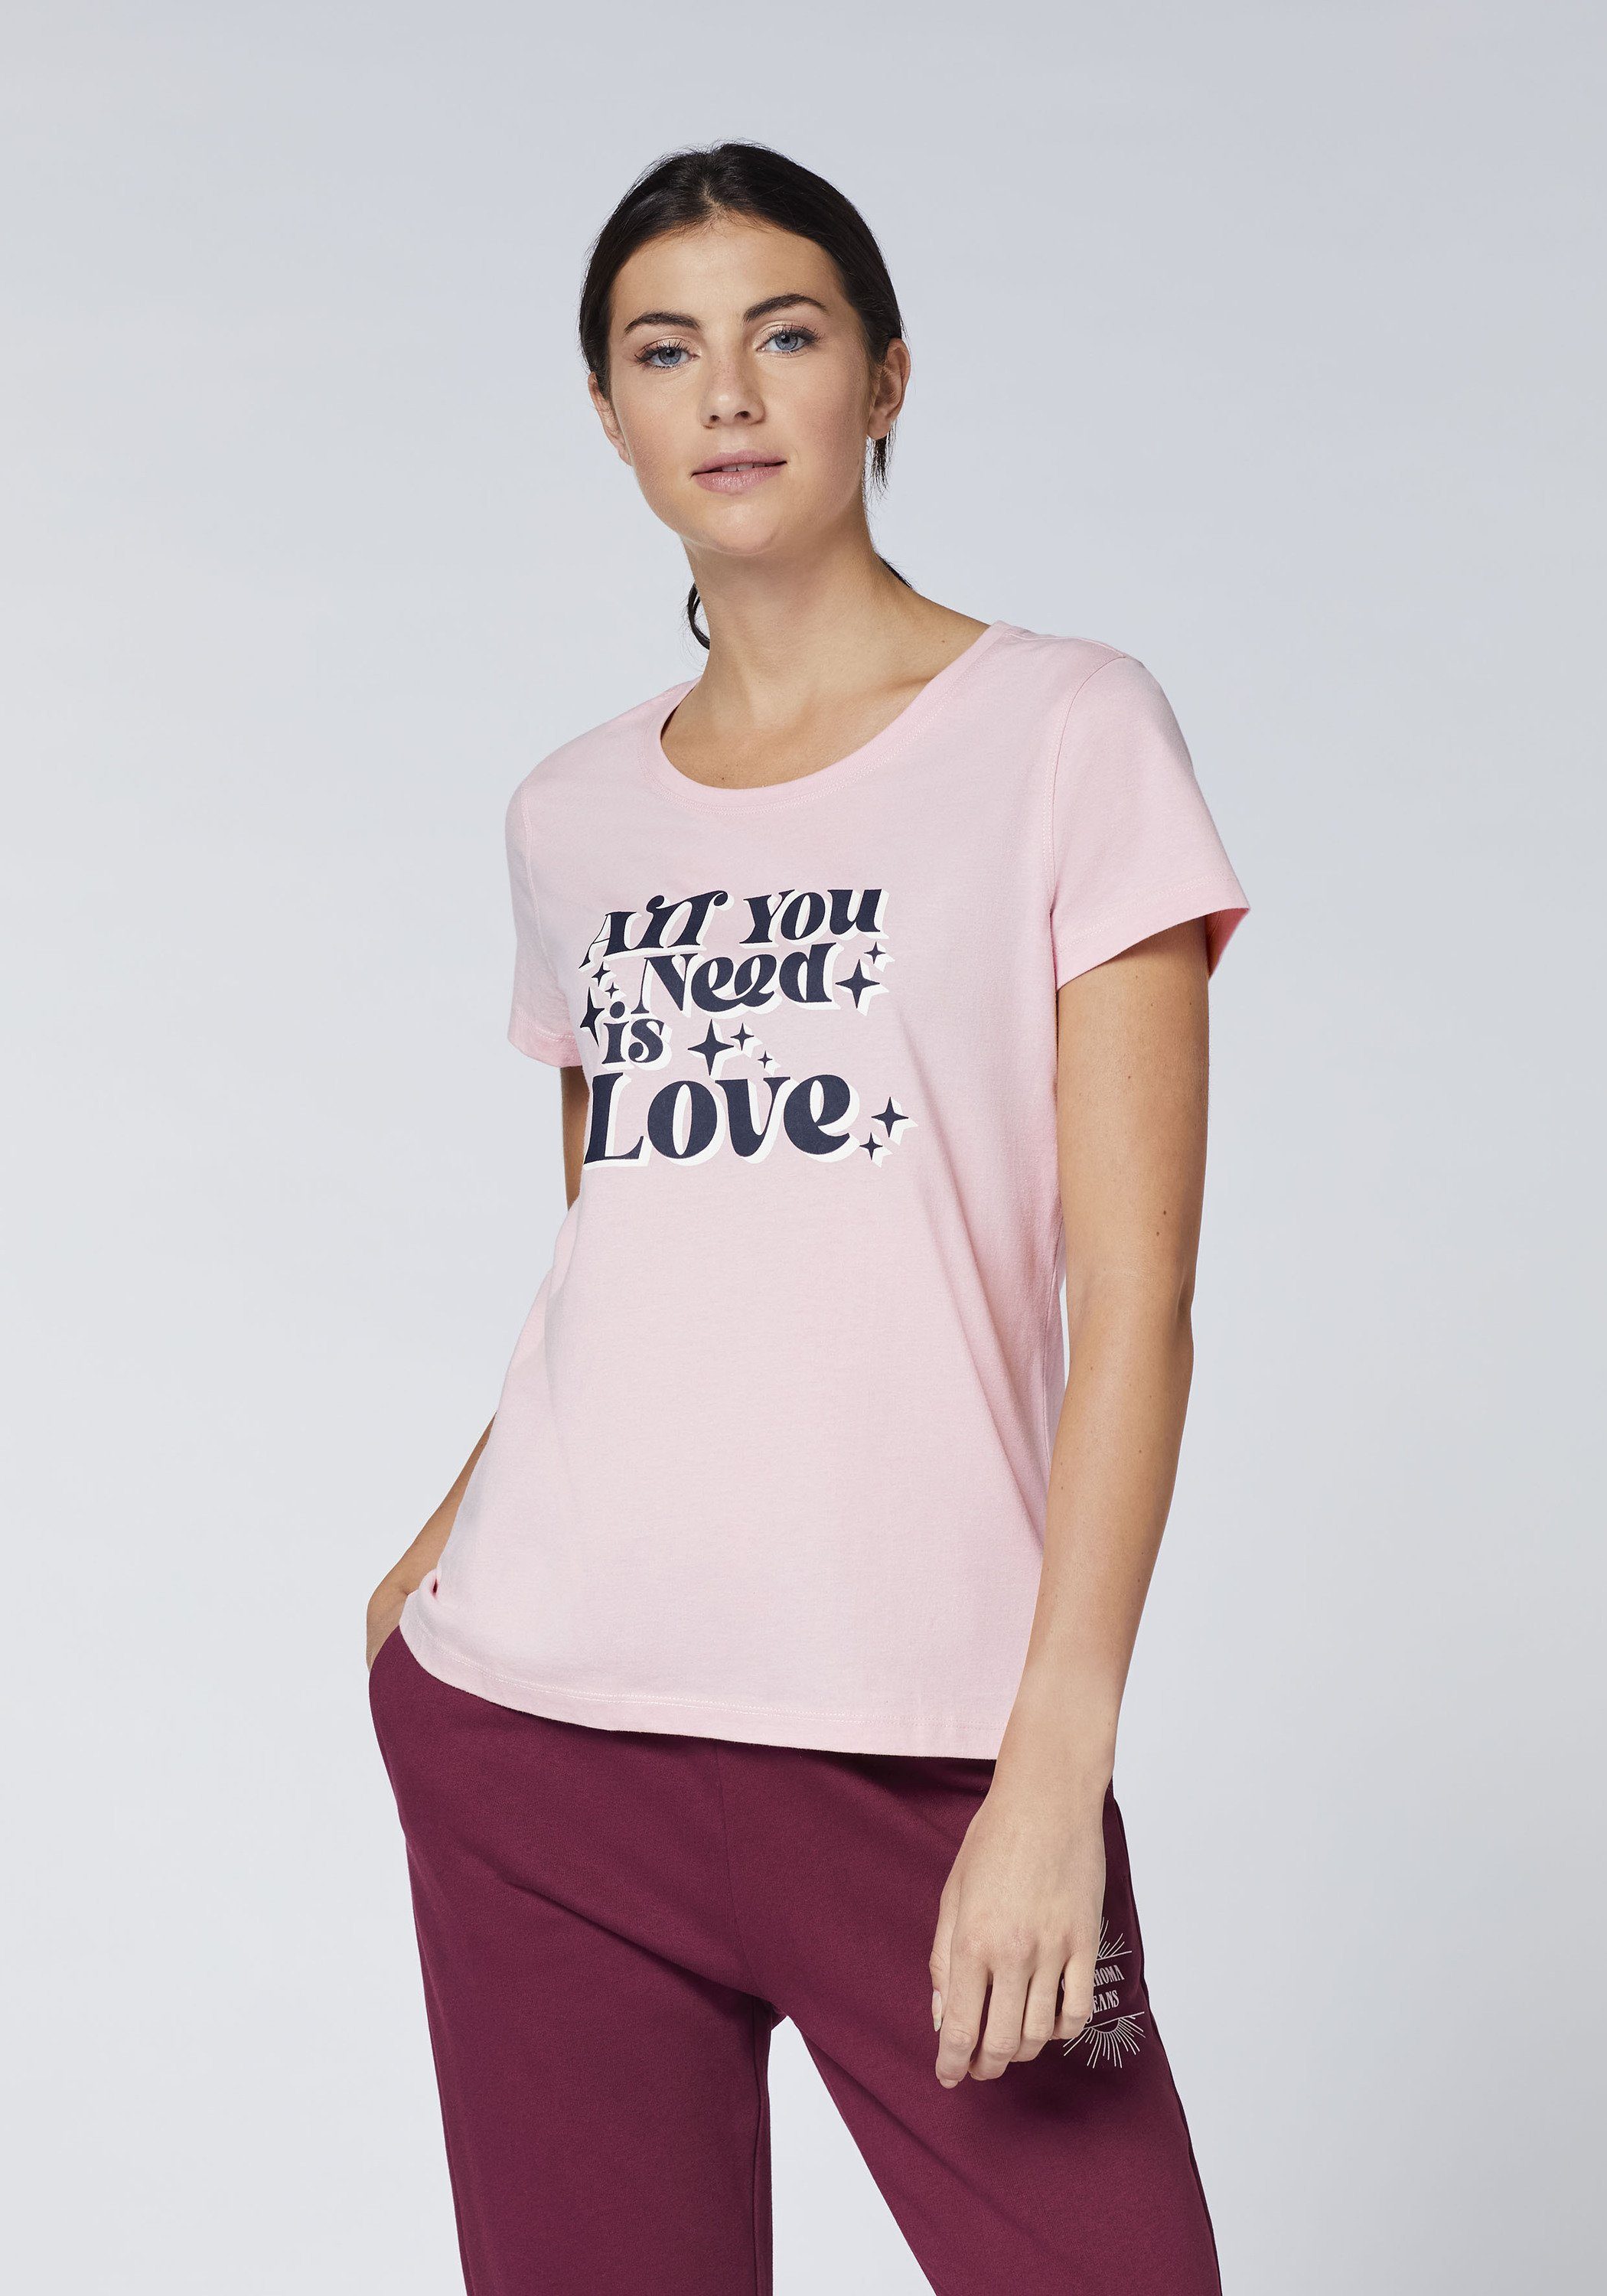 14-2305 Oklahoma Statement-Schriftzug Pink Jeans mit Nectar Print-Shirt